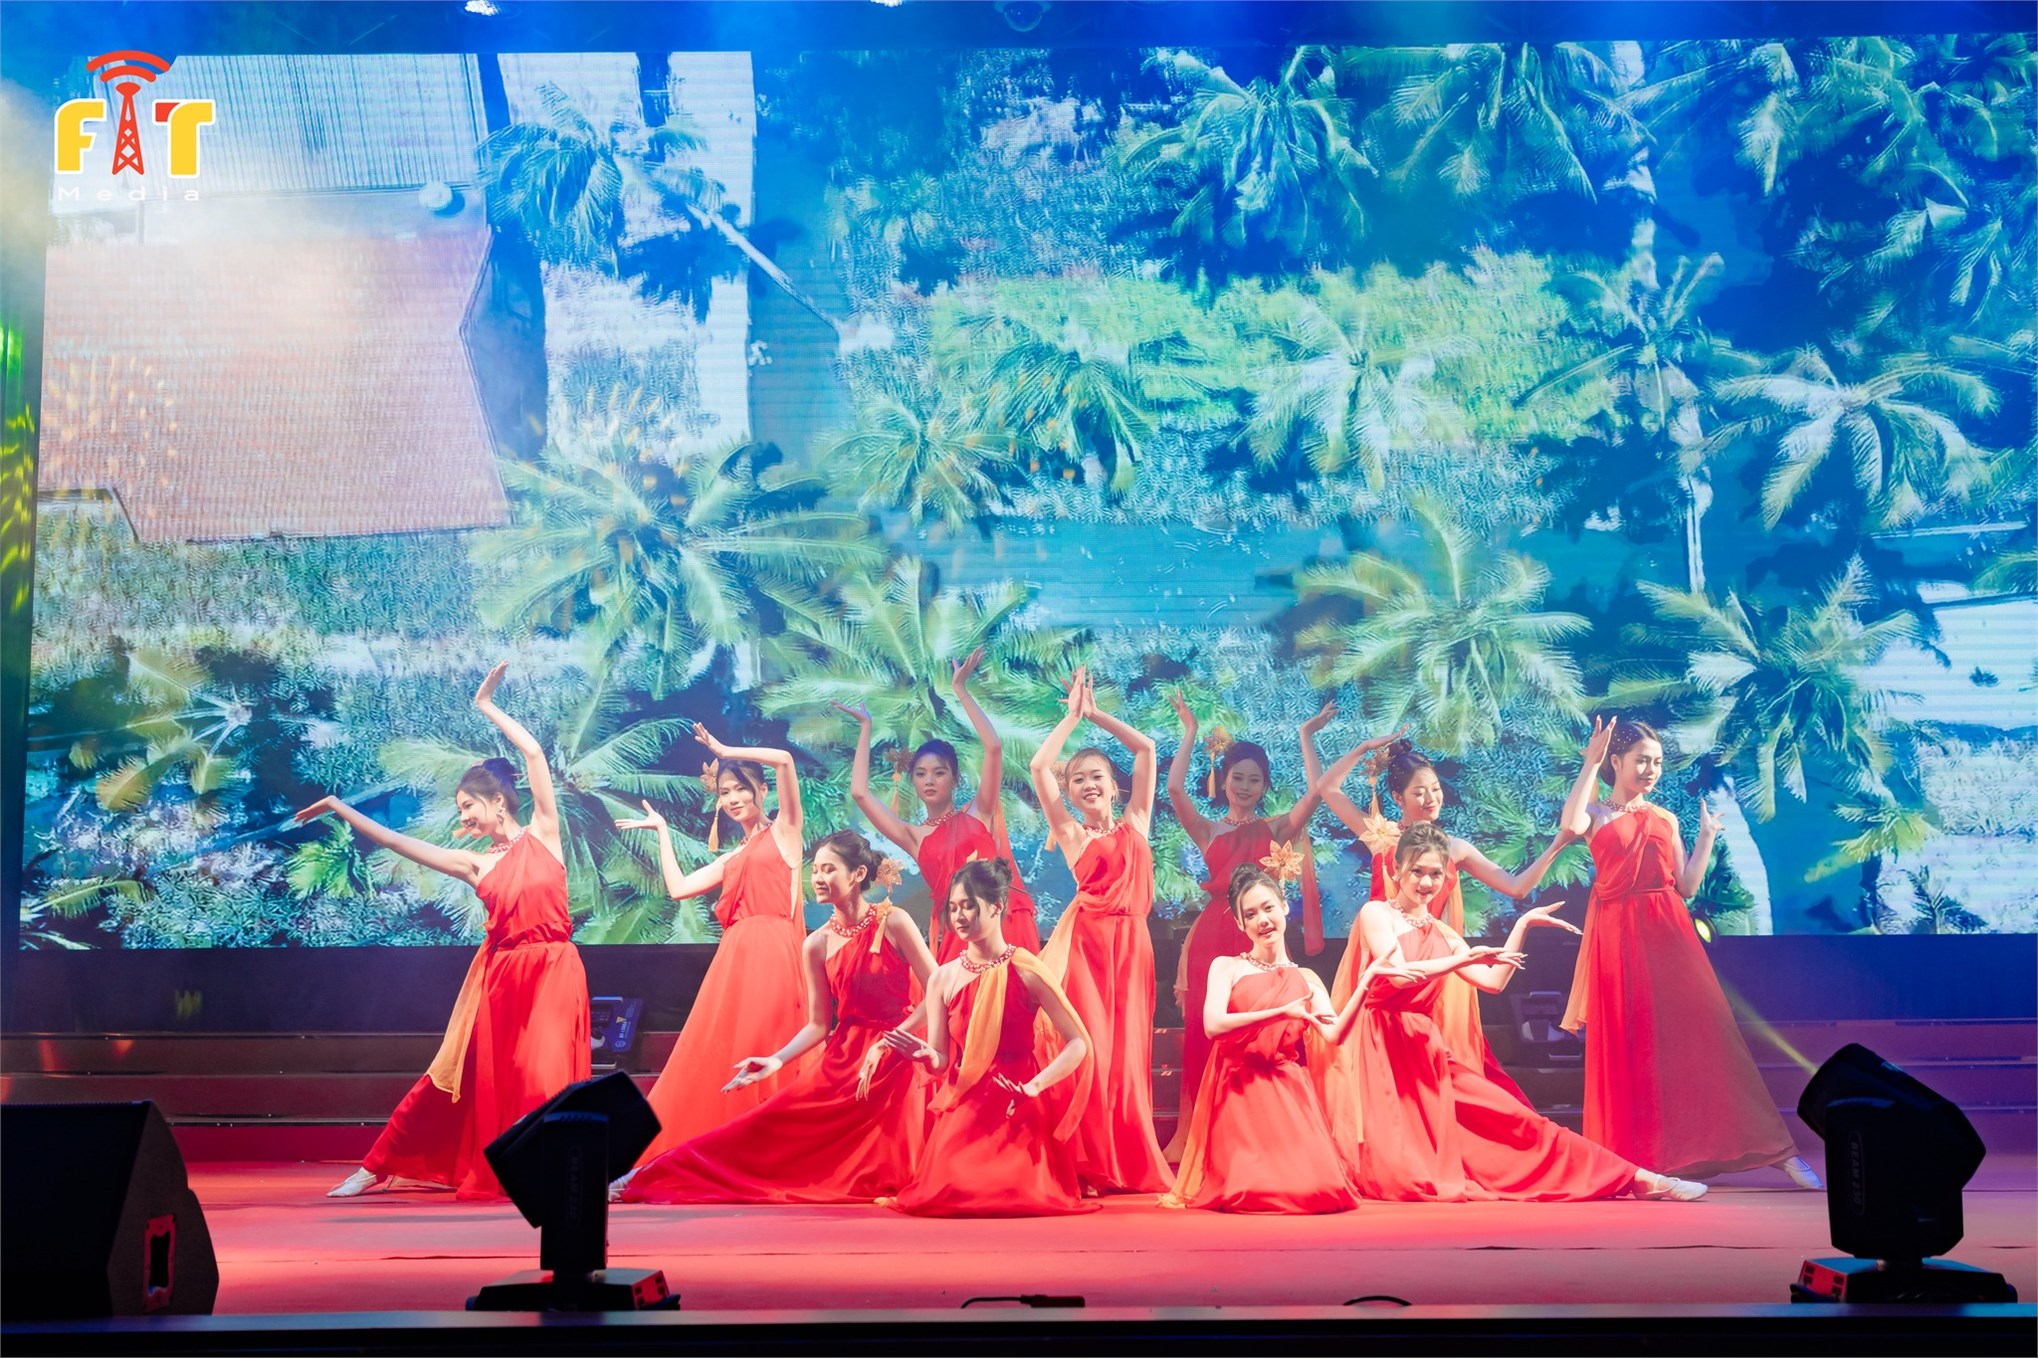 Bùng nổ đêm chung kết nữ sinh tài năng – thanh lịch Miss HaUI 2022